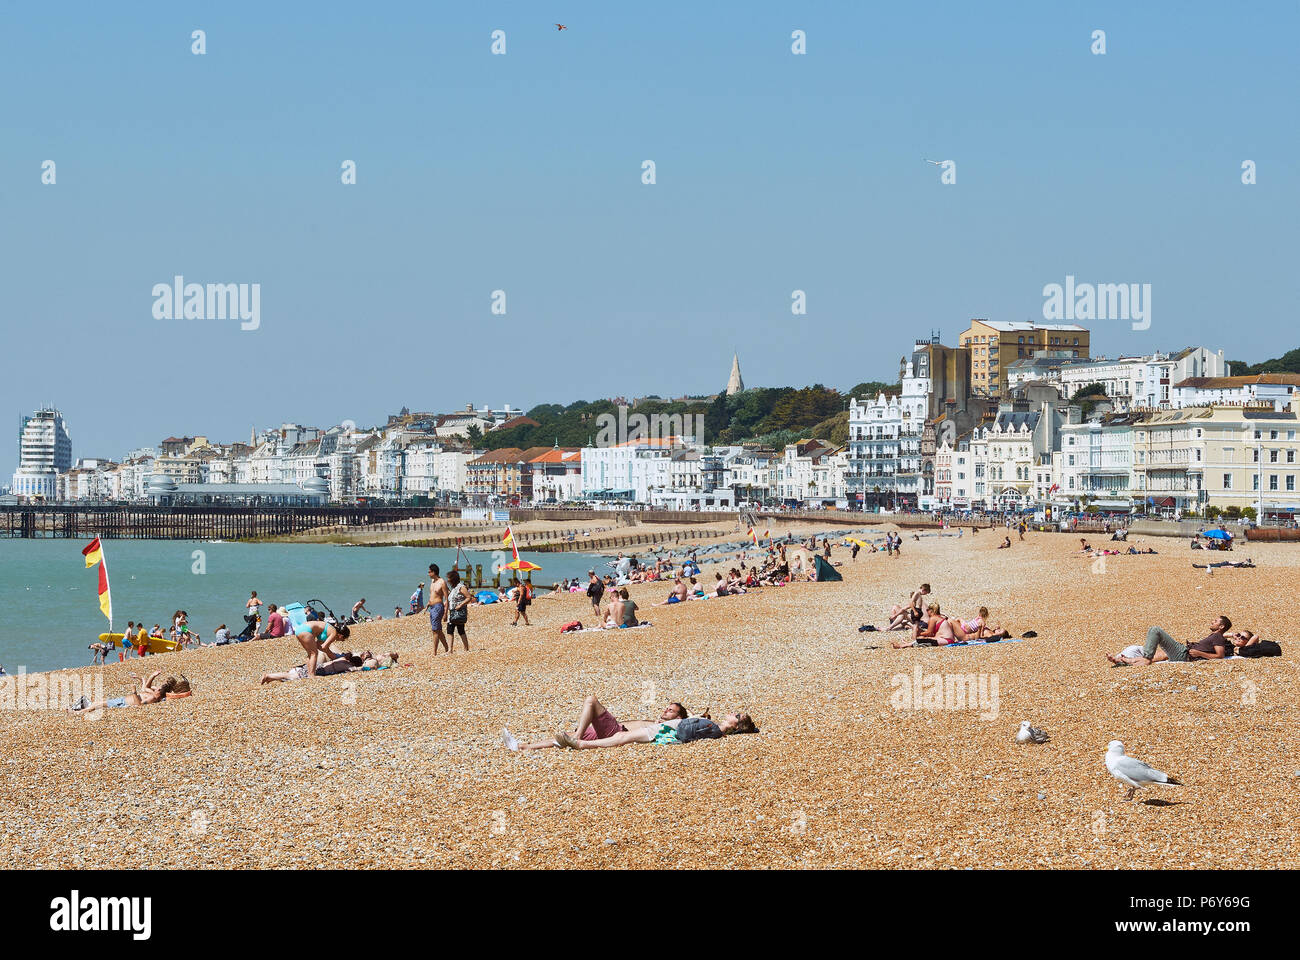 Le soleil sur la plage d'Hastings, East Sussex, UK en Juin Banque D'Images